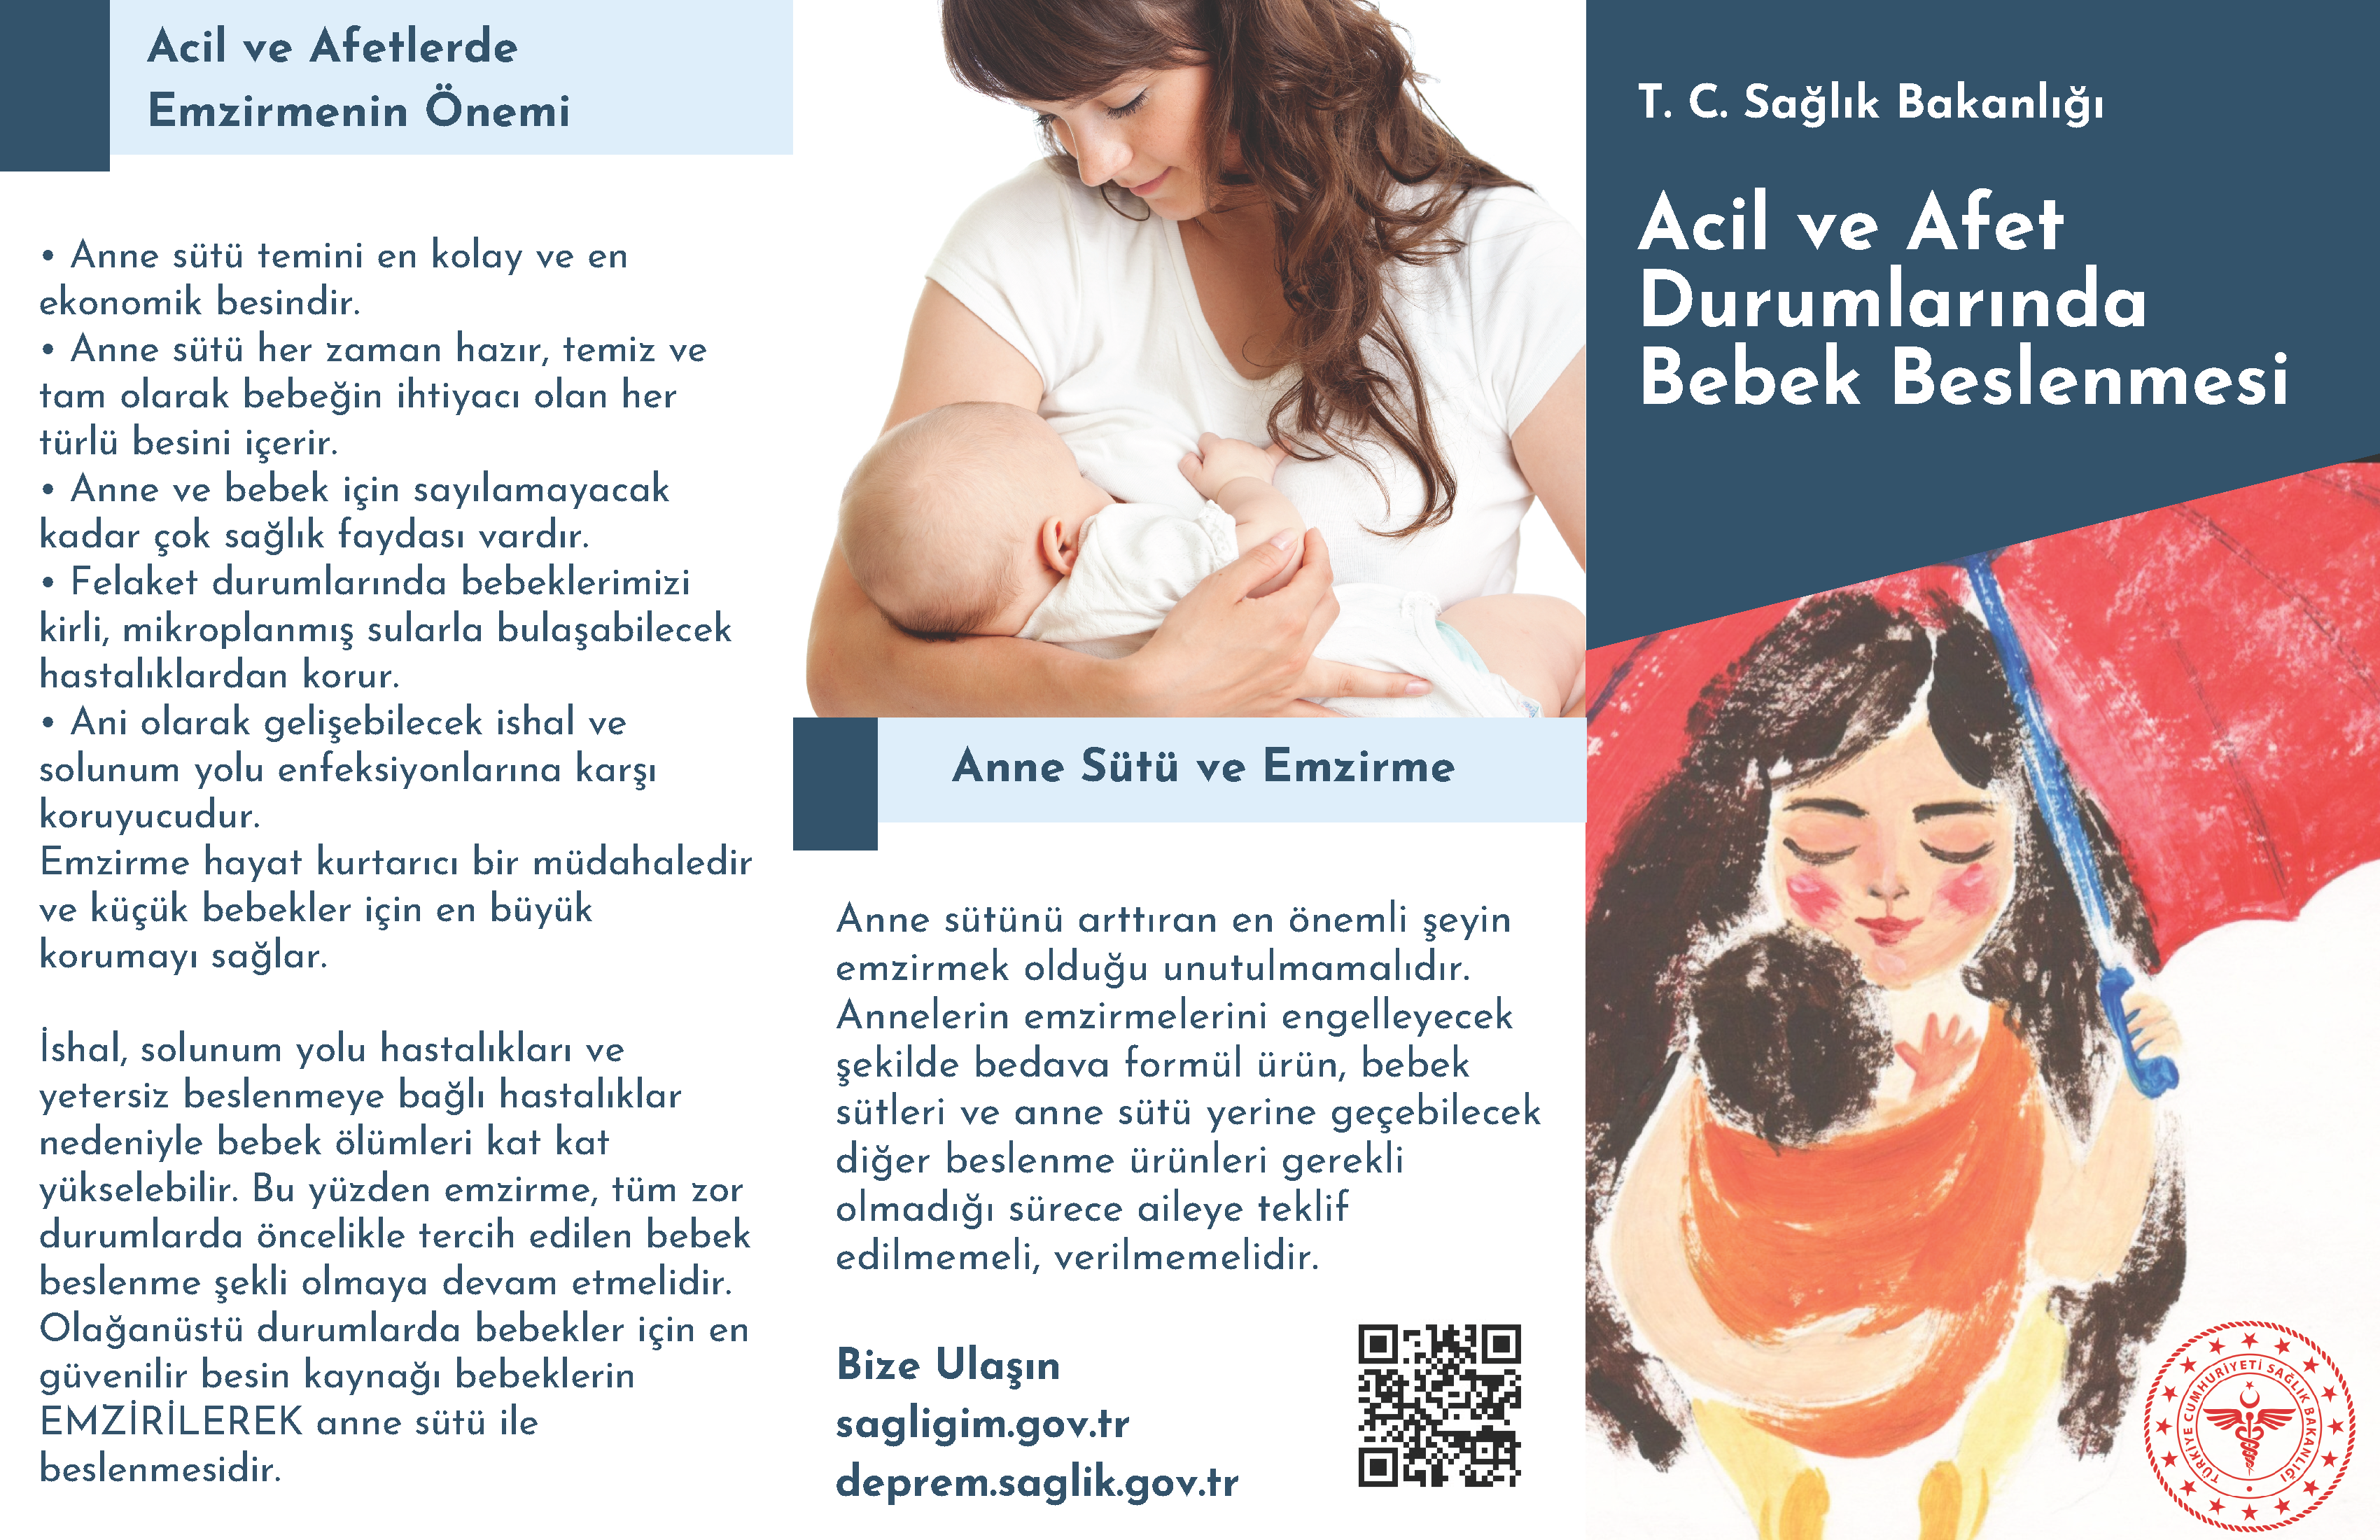 acil afet durumlarinda bebek beslenmesi brosur Page 1